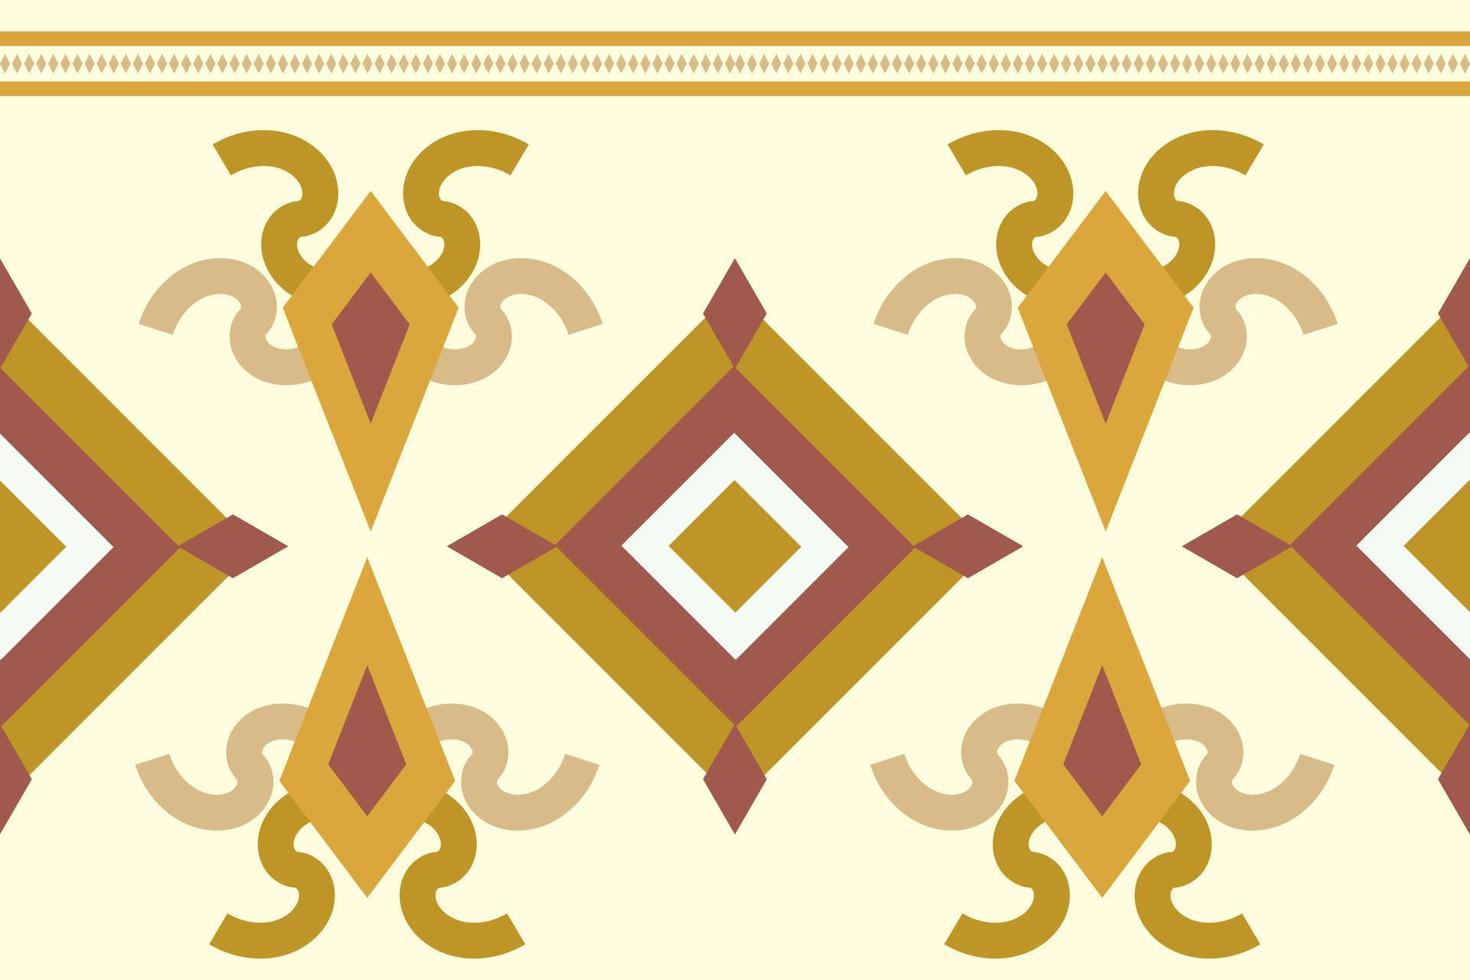 estilo geométrico padrão de tecido étnico. sarong asteca étnica oriental padrão tradicional fundo creme marrom branco. resumo,vetor,ilustração. use para textura, roupas, embrulhos, decoração, carpete. vetor